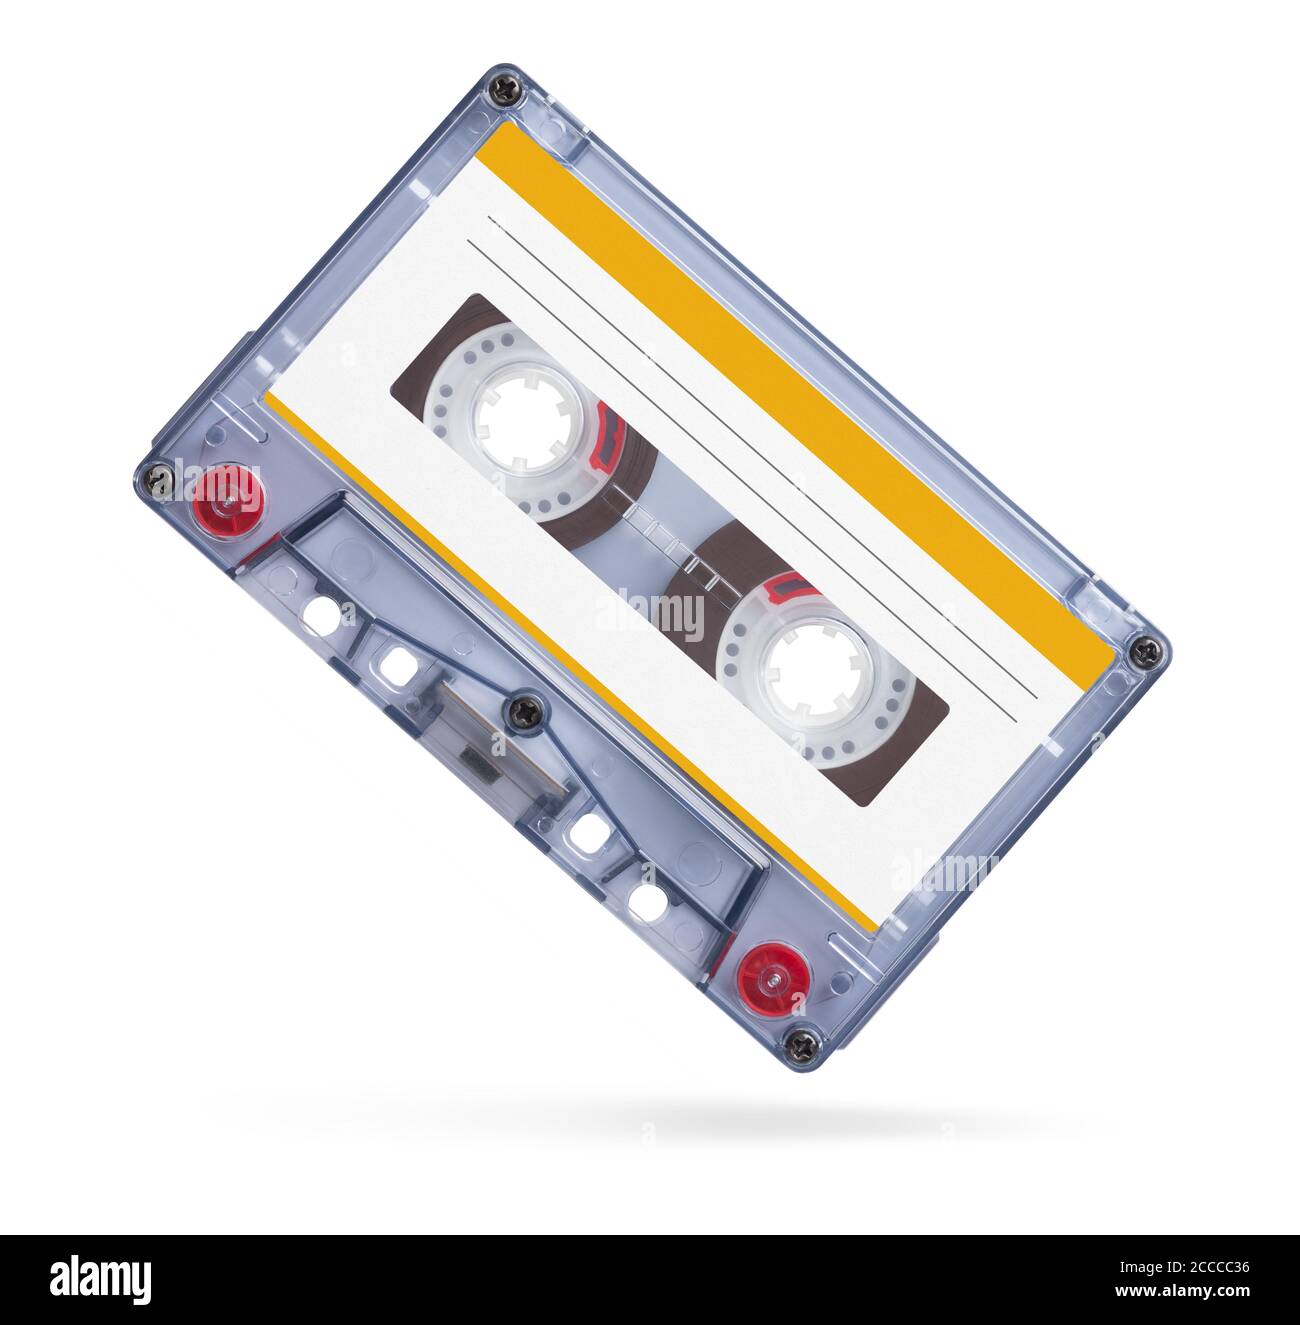 Ancien ruban audio cassettes compactes isolé sur fond blanc avec clipping path Banque D'Images